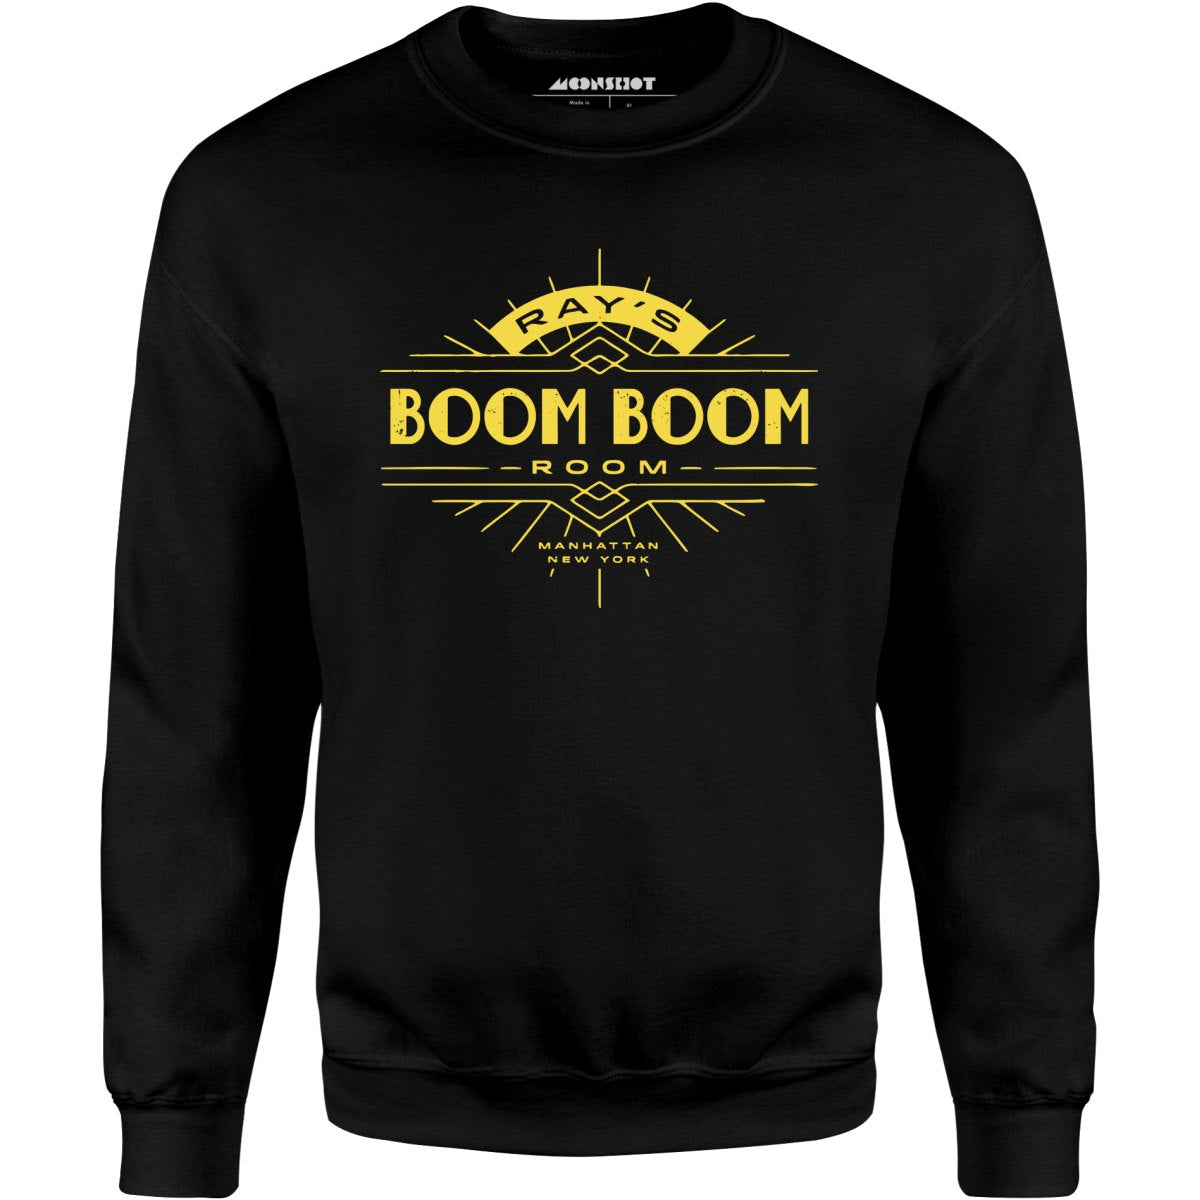 Ray's Boom Boom Room - Unisex Sweatshirt